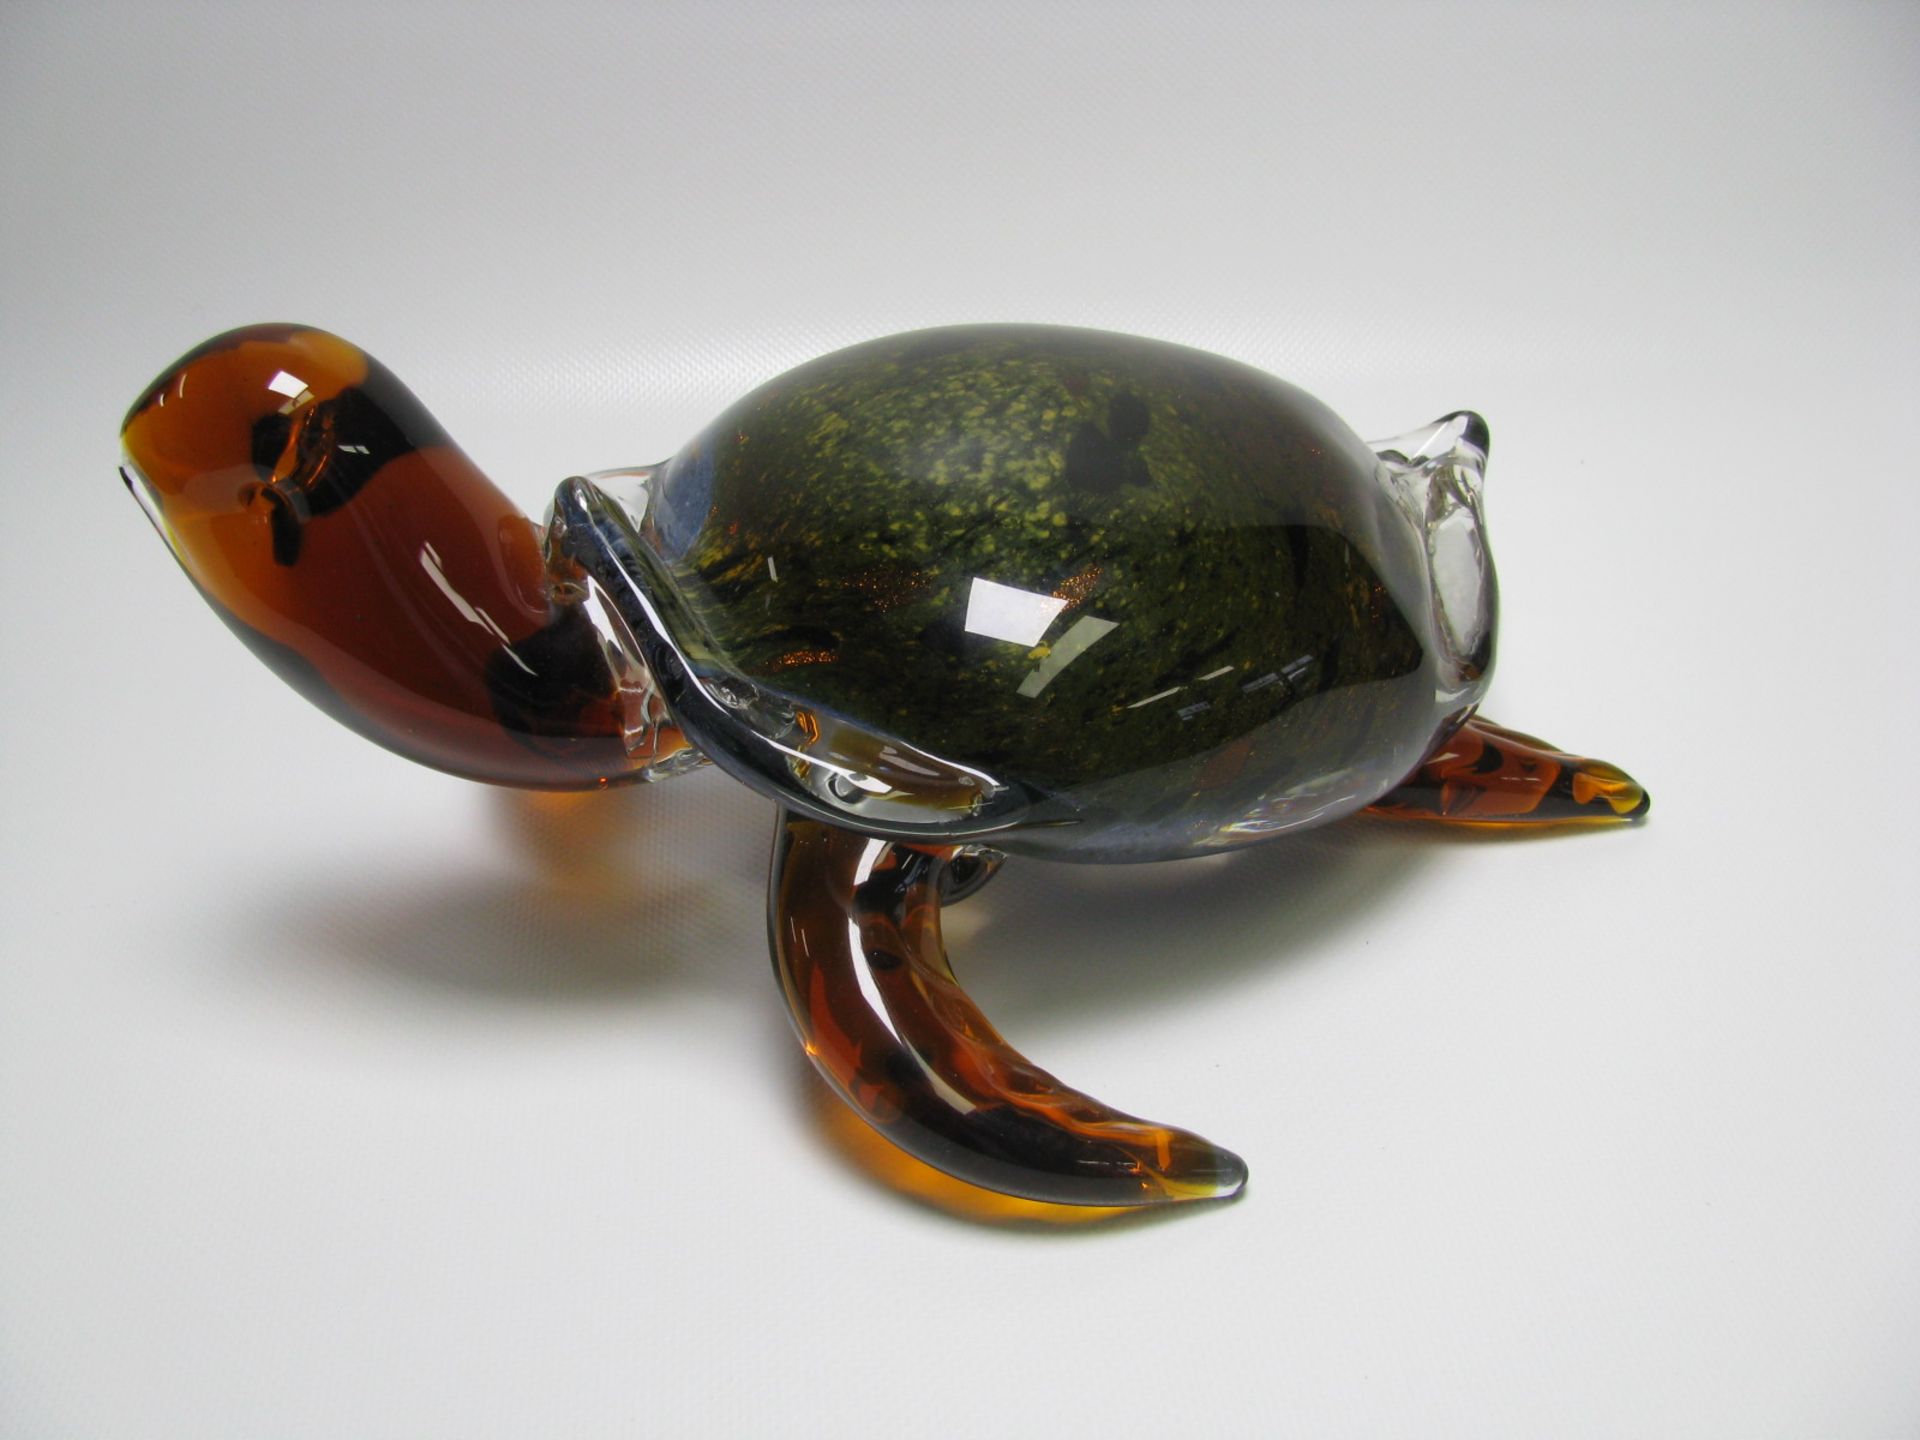 Kunstglas-Skulptur, Schildkröte, vielfarbig eingeschmolzenes Glas mit Goldflimmer, 13 x 27 x 20 cm.